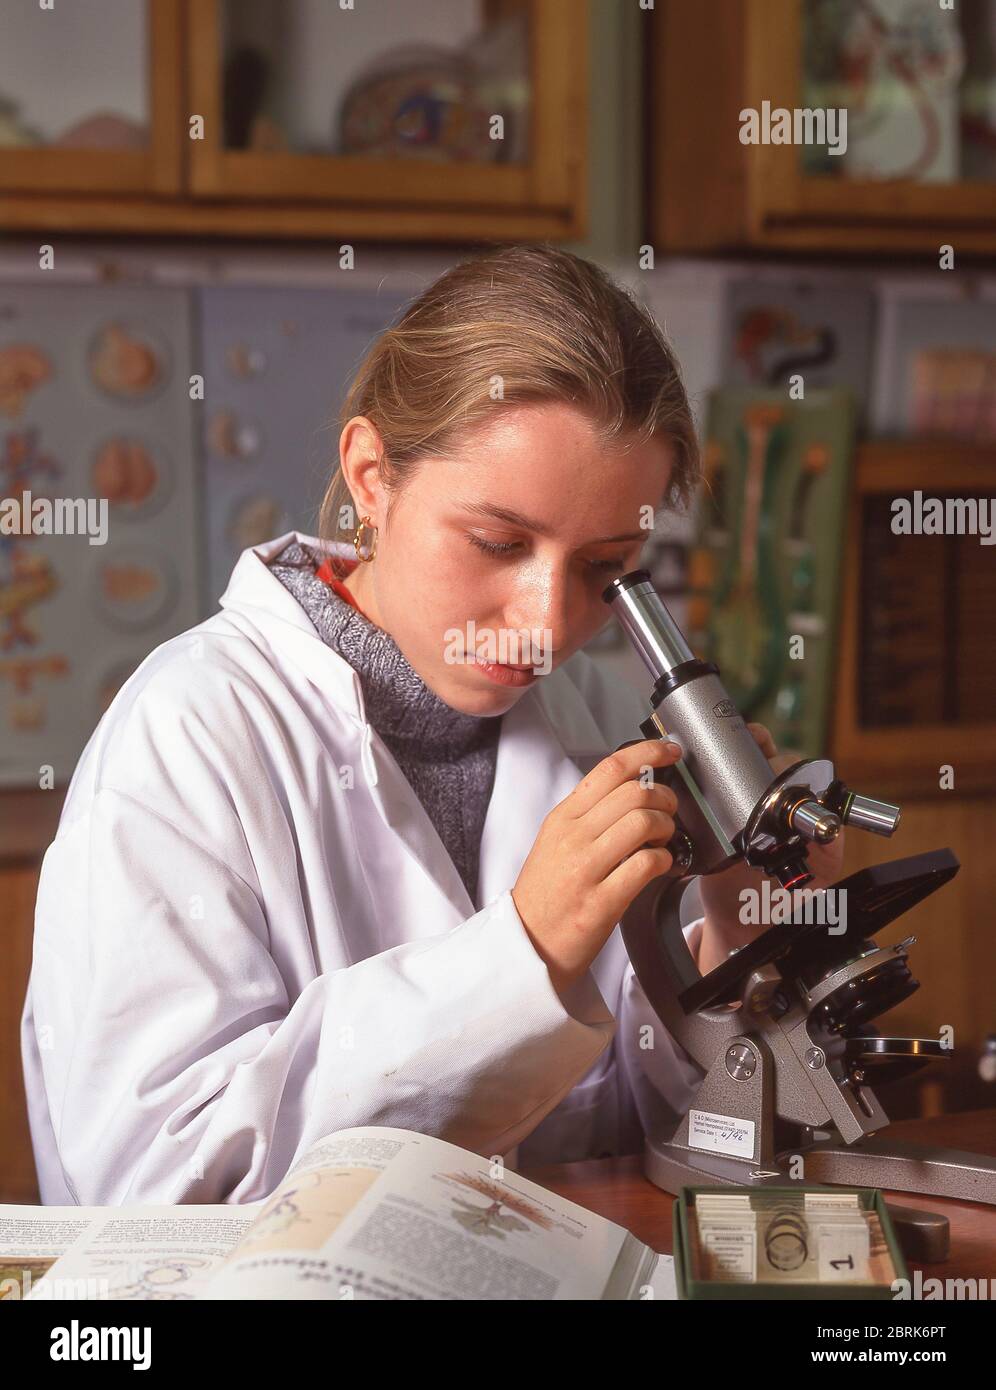 Étudiante féminine au microscope en classe, Surrey, Angleterre, Royaume-Uni Banque D'Images